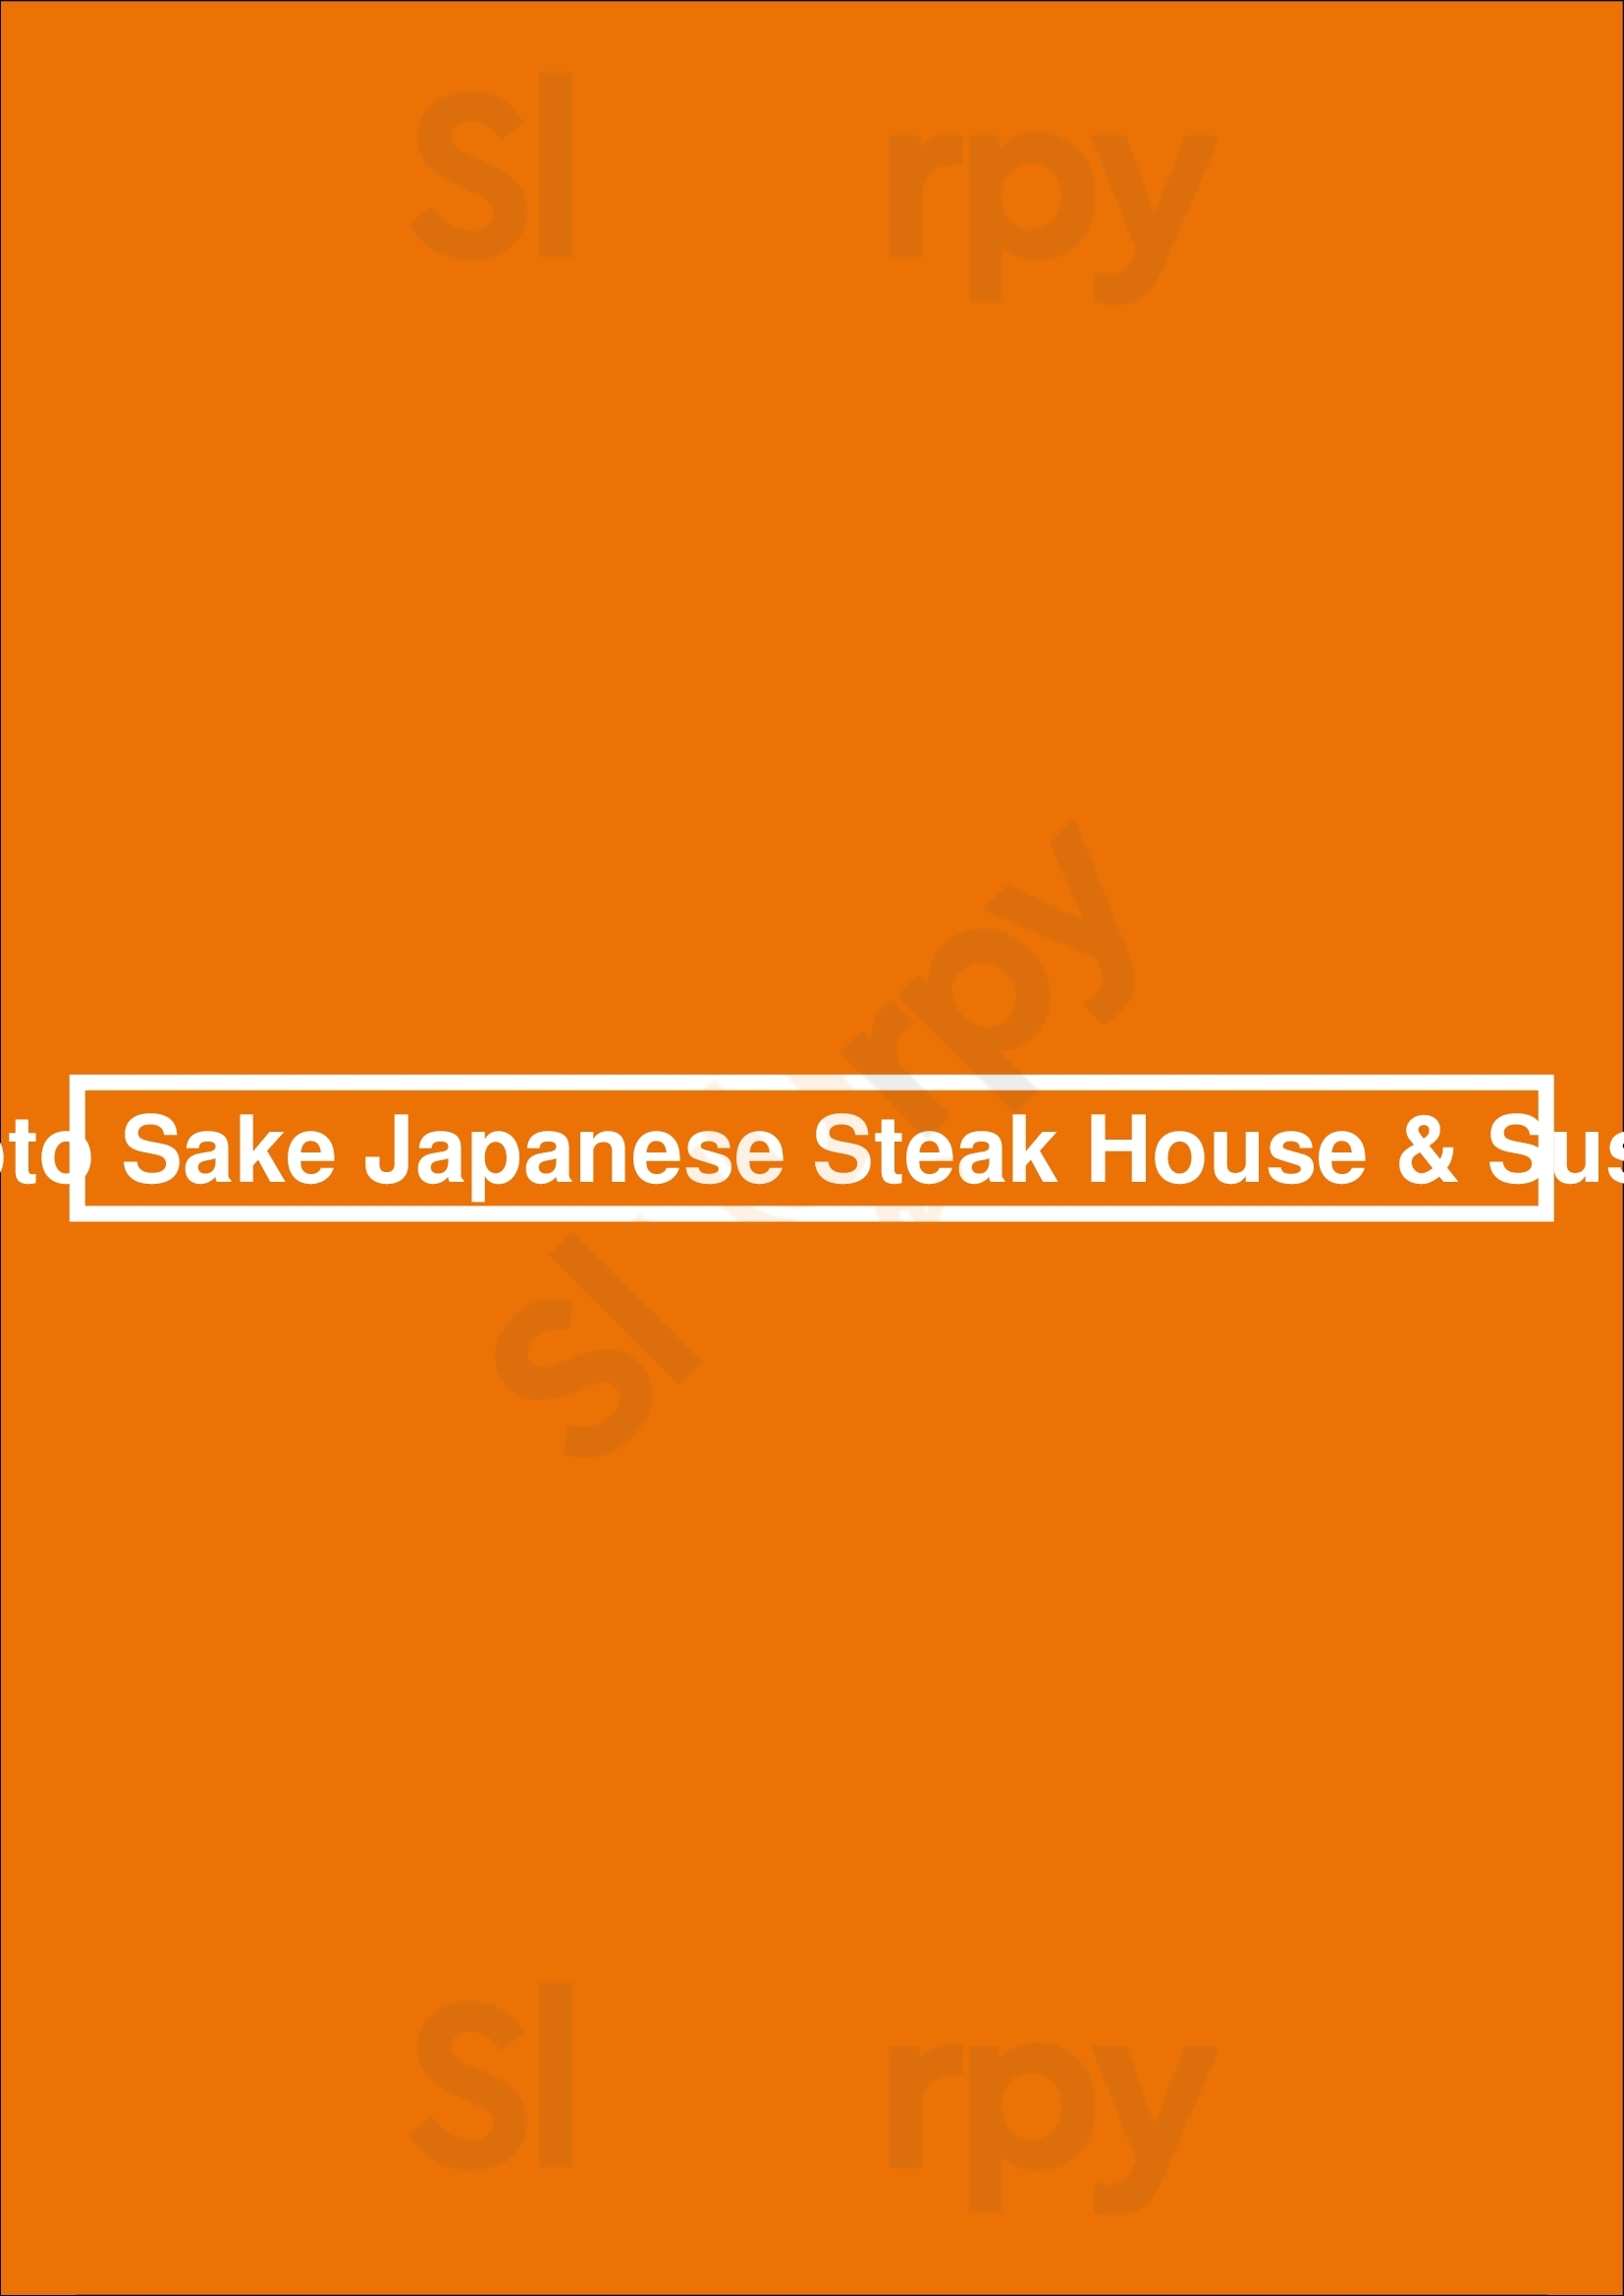 Koto Sake Japanese Steak House & Sushi Columbia Menu - 1